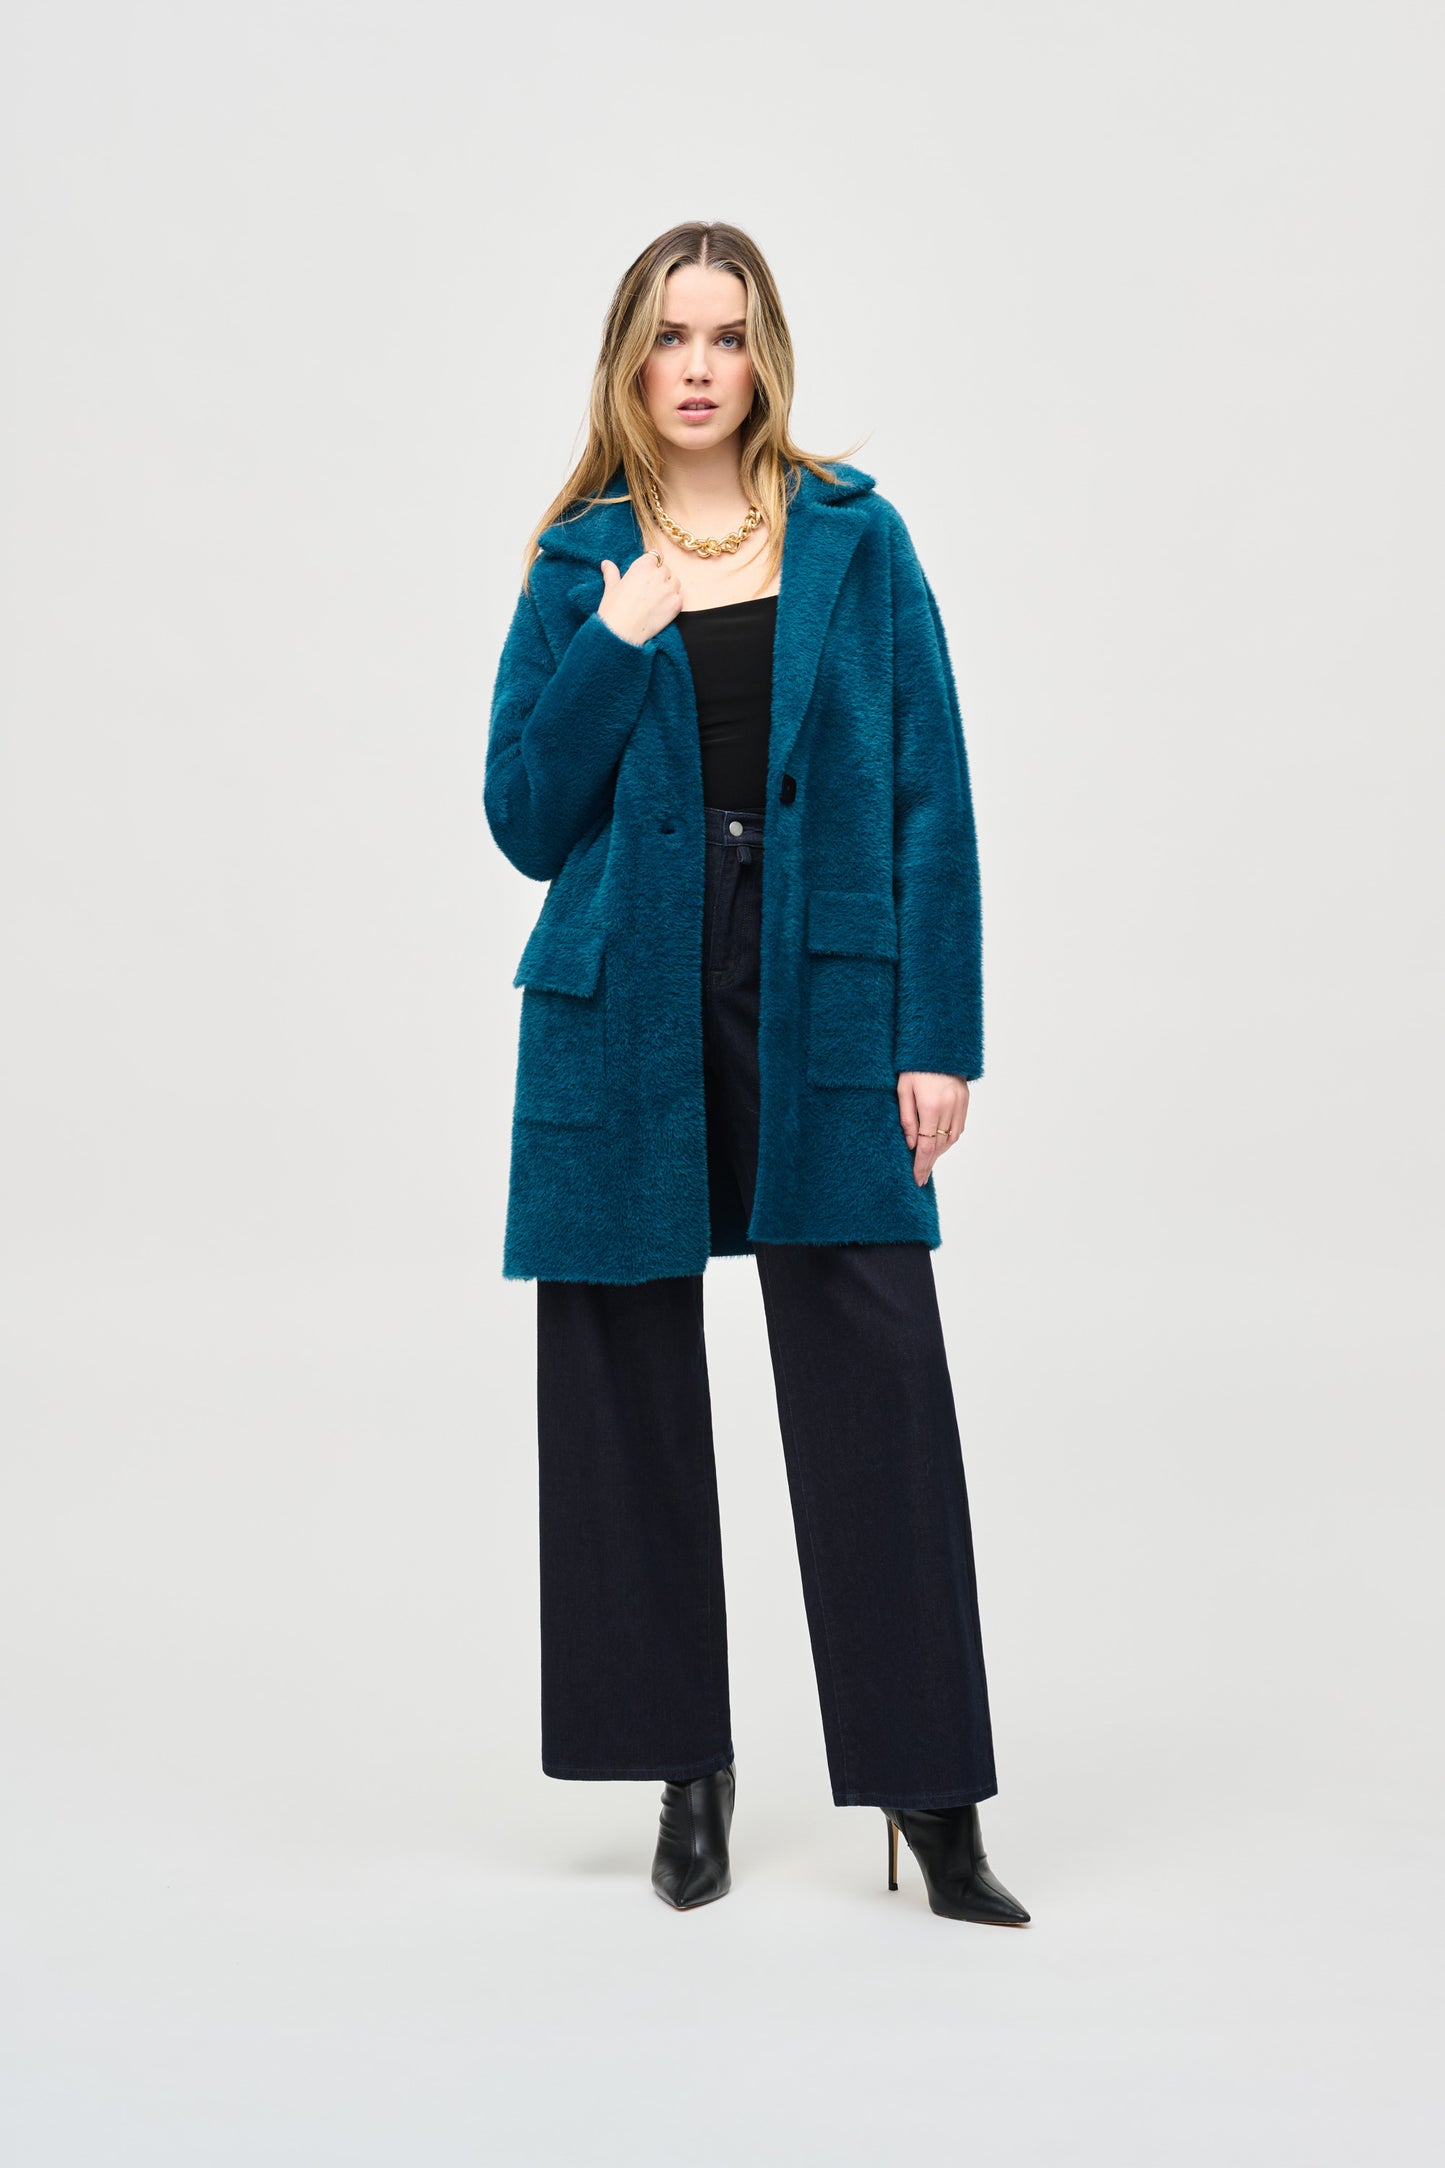 Feather Yarn Sweater Coat